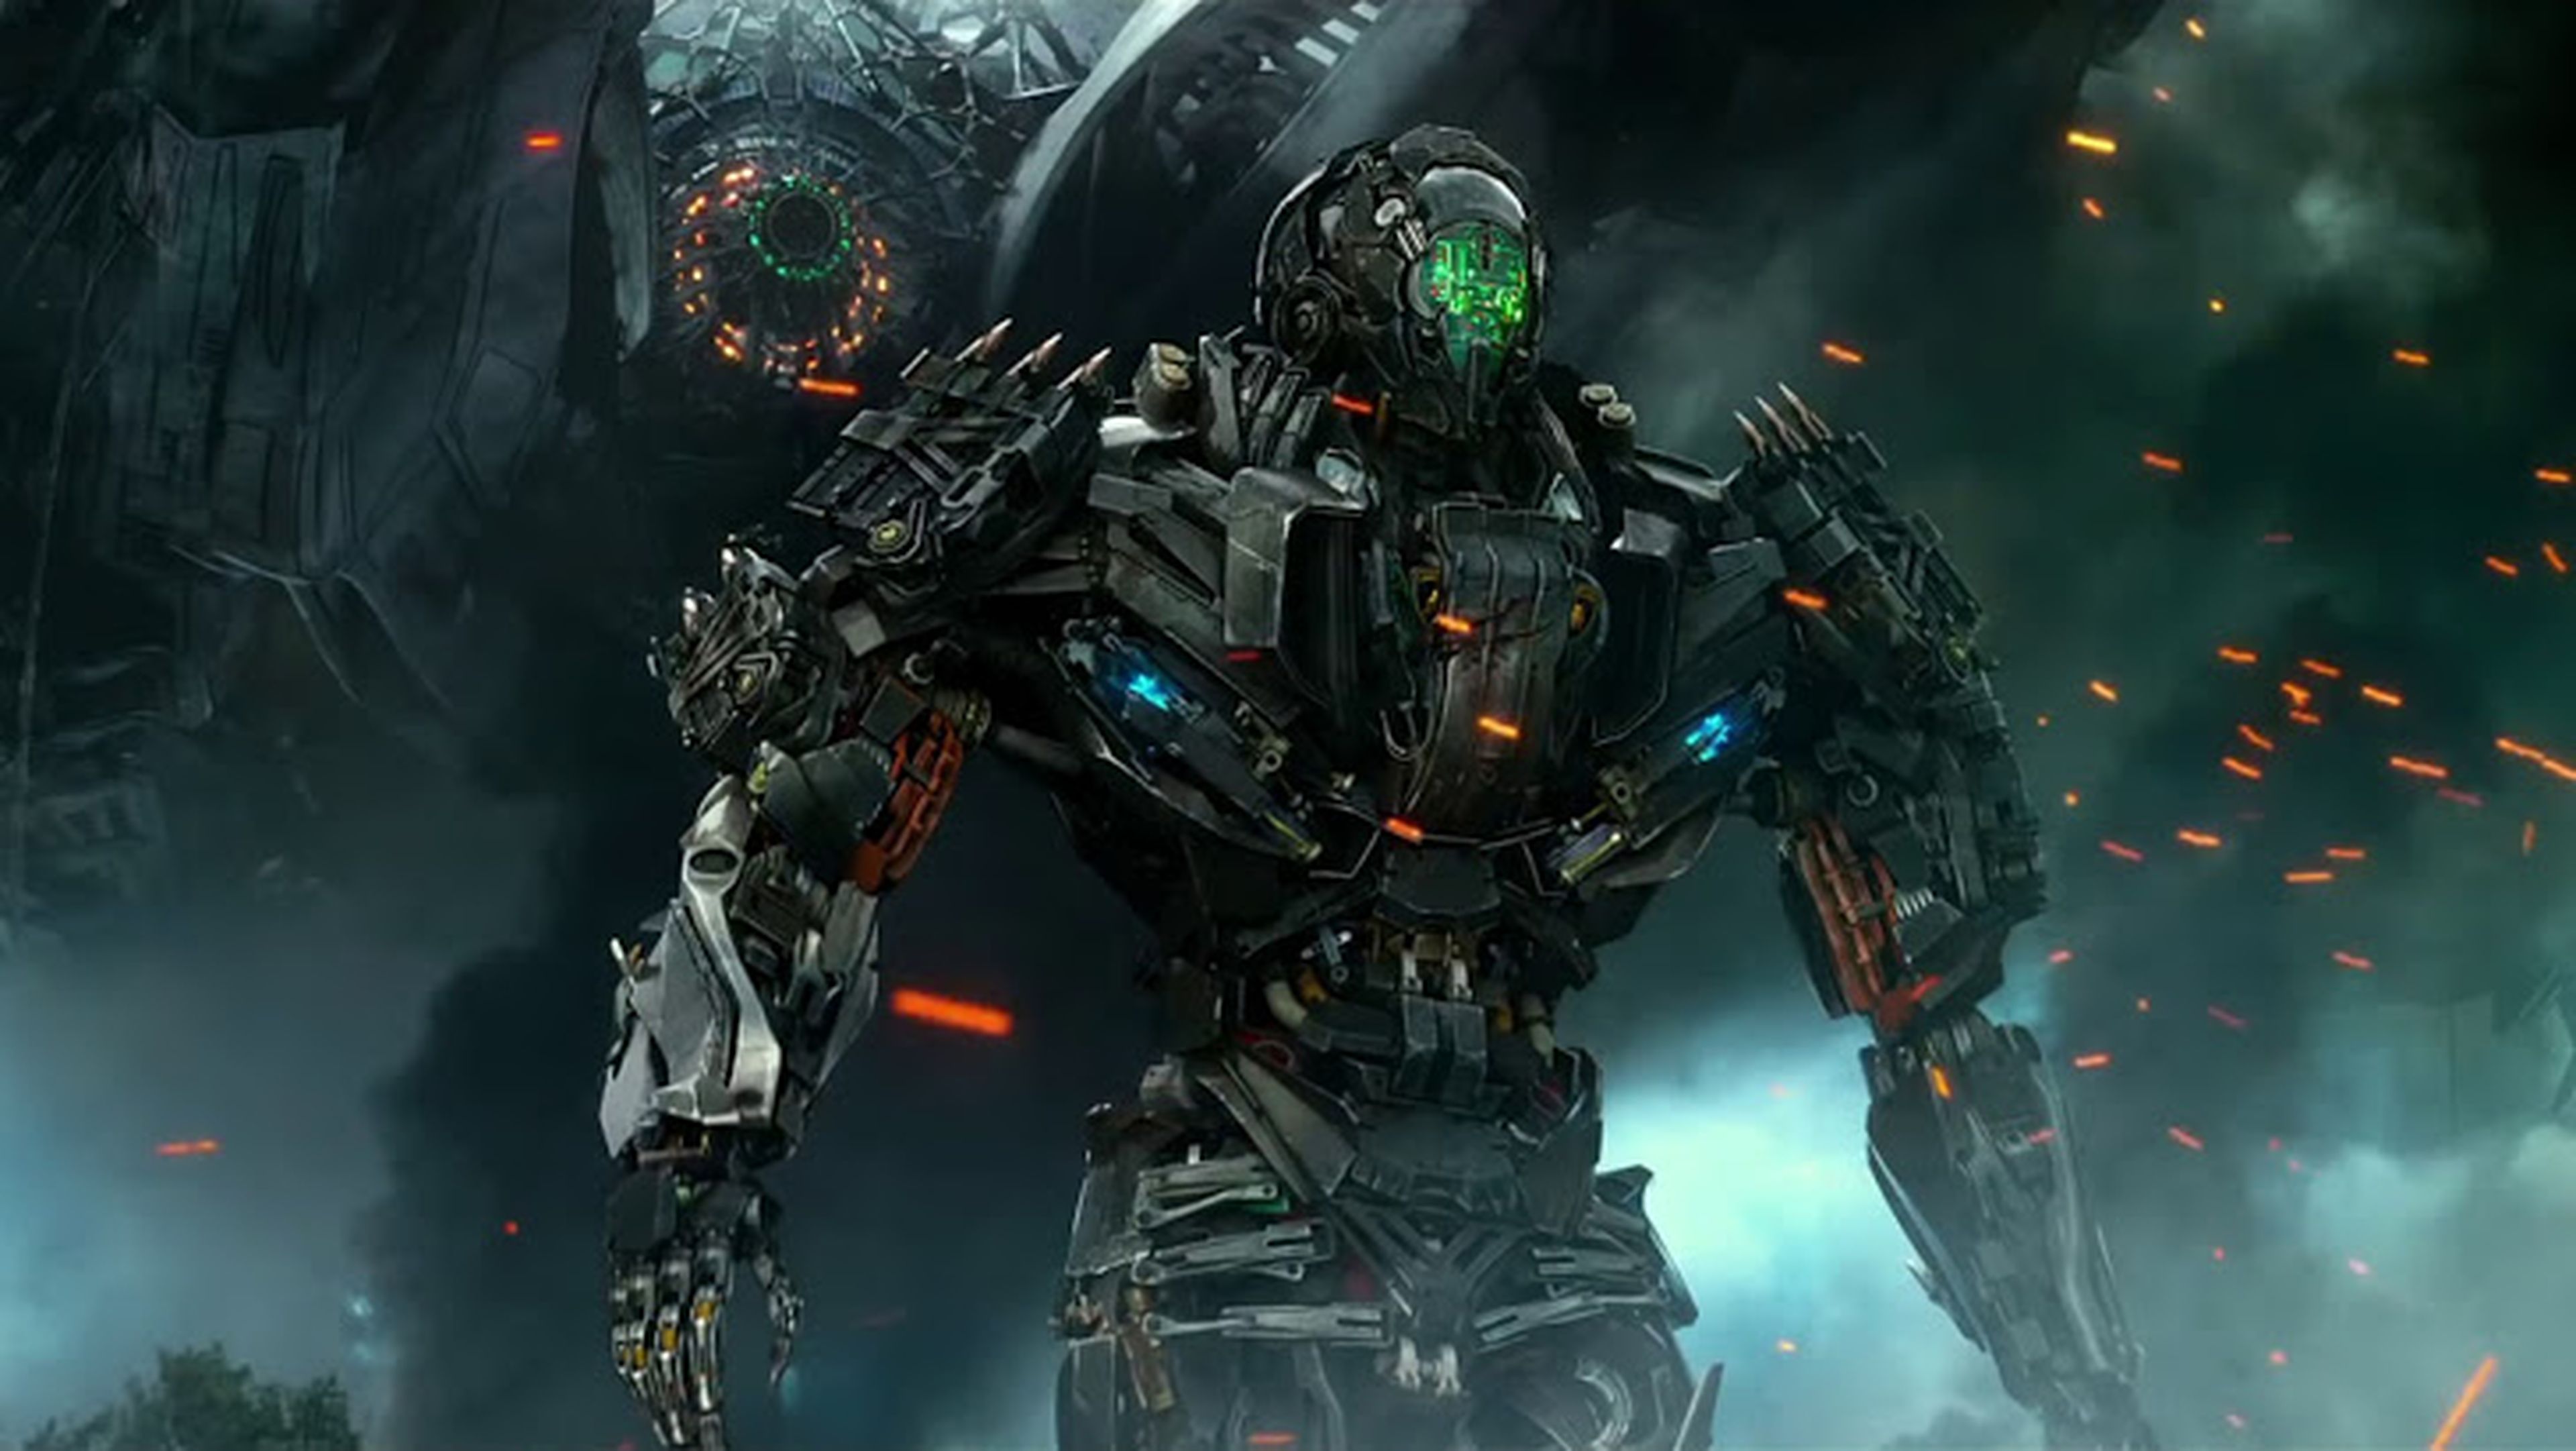 Transformers: La era de la extinción ¡Crítica doble!